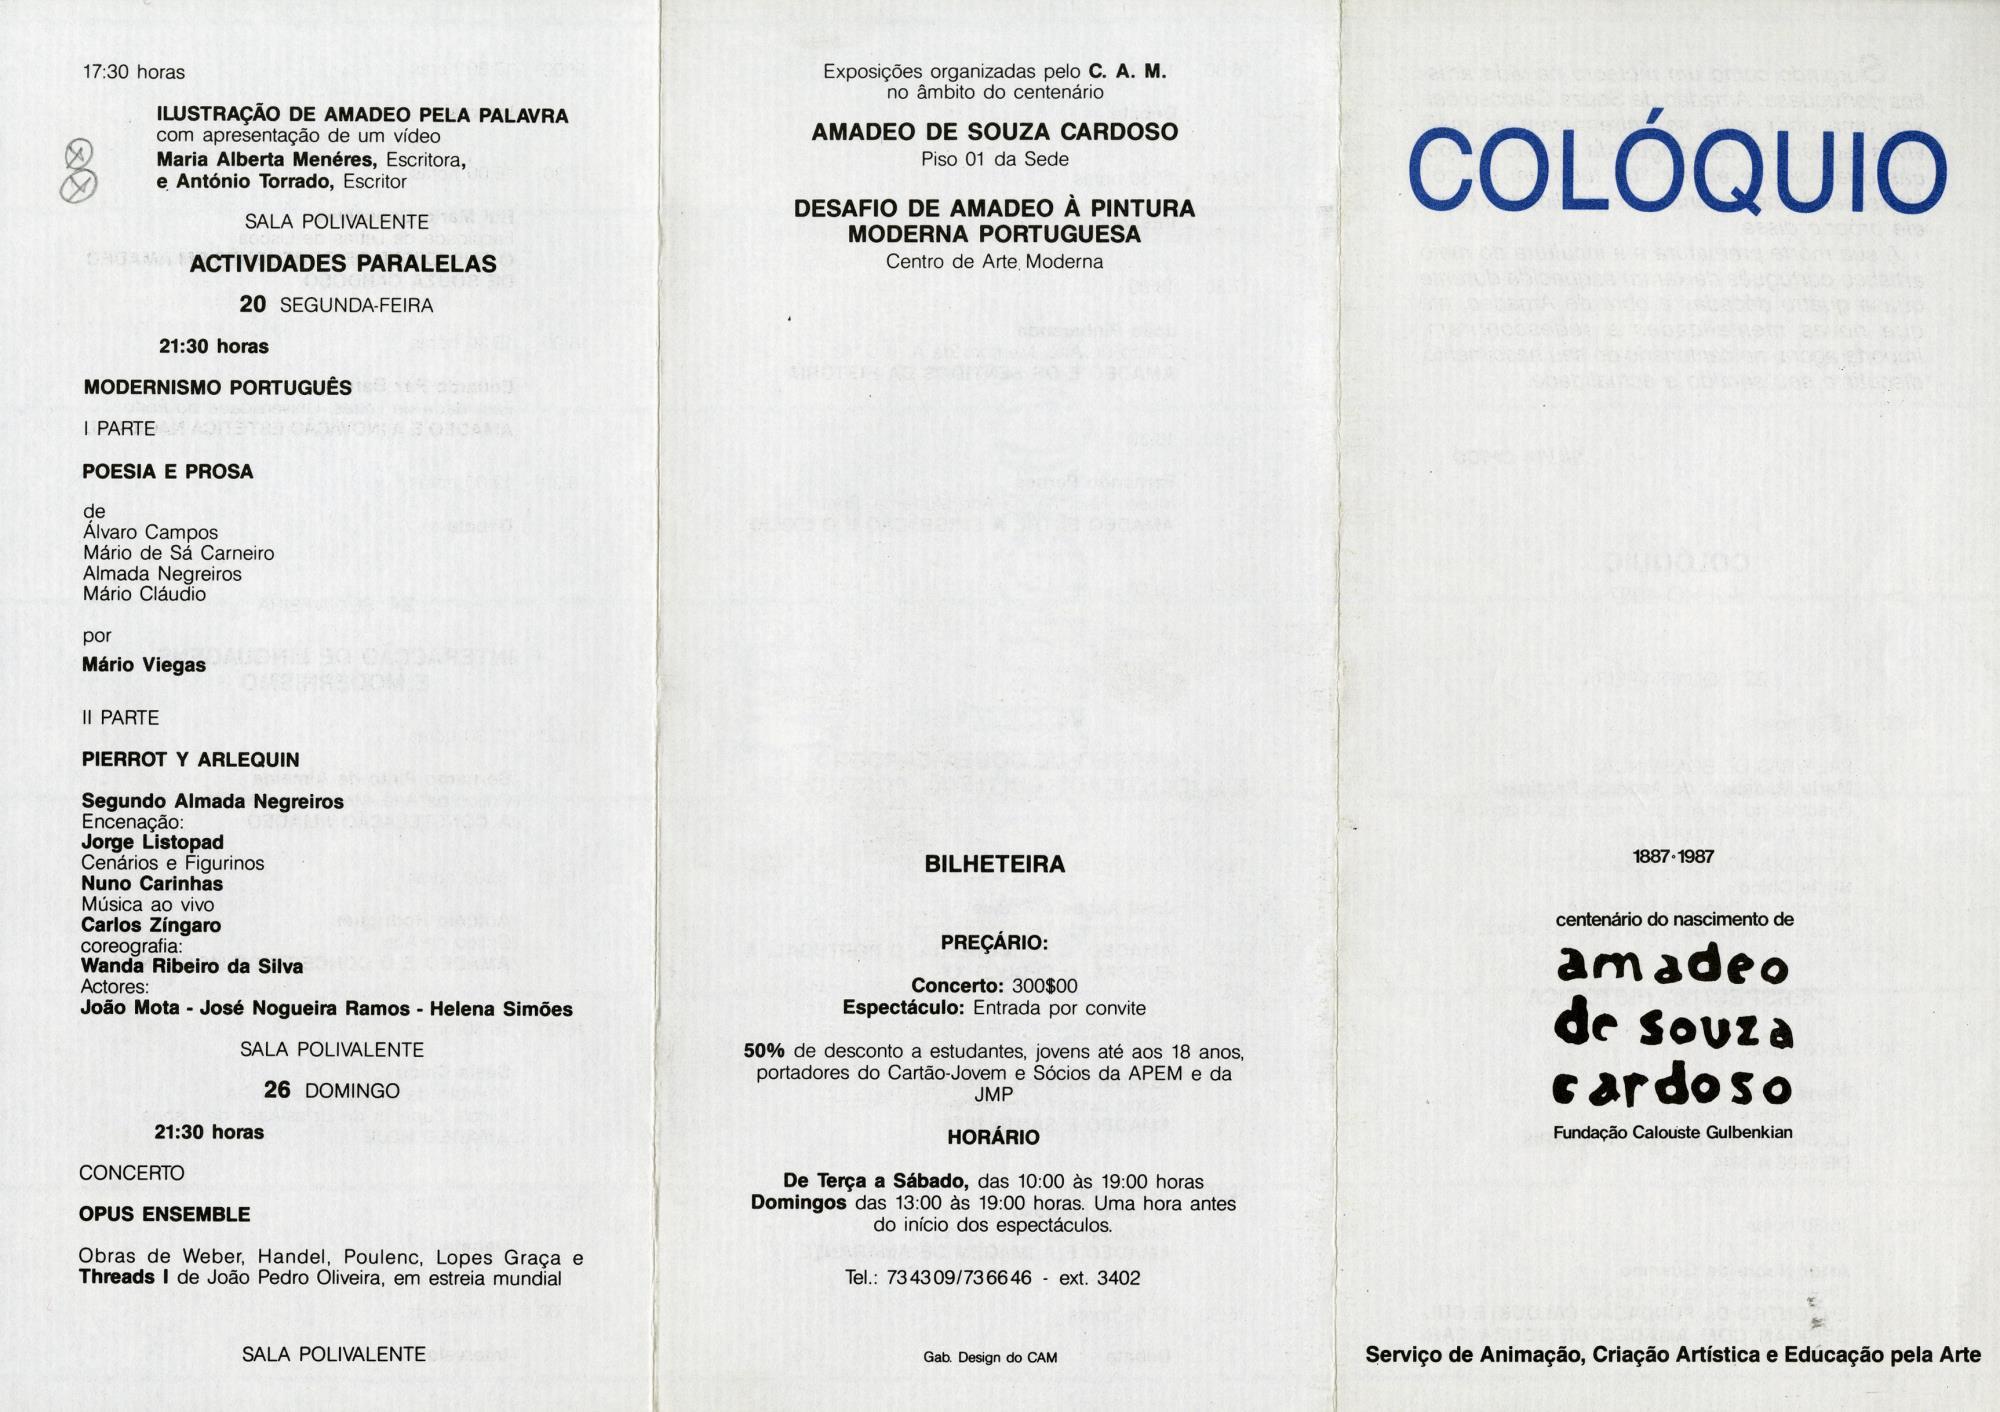 Centenário do Nascimento de Amadeo de Souza-Cardoso, 1887 – 1987 [colóquio e eventos asscociados]